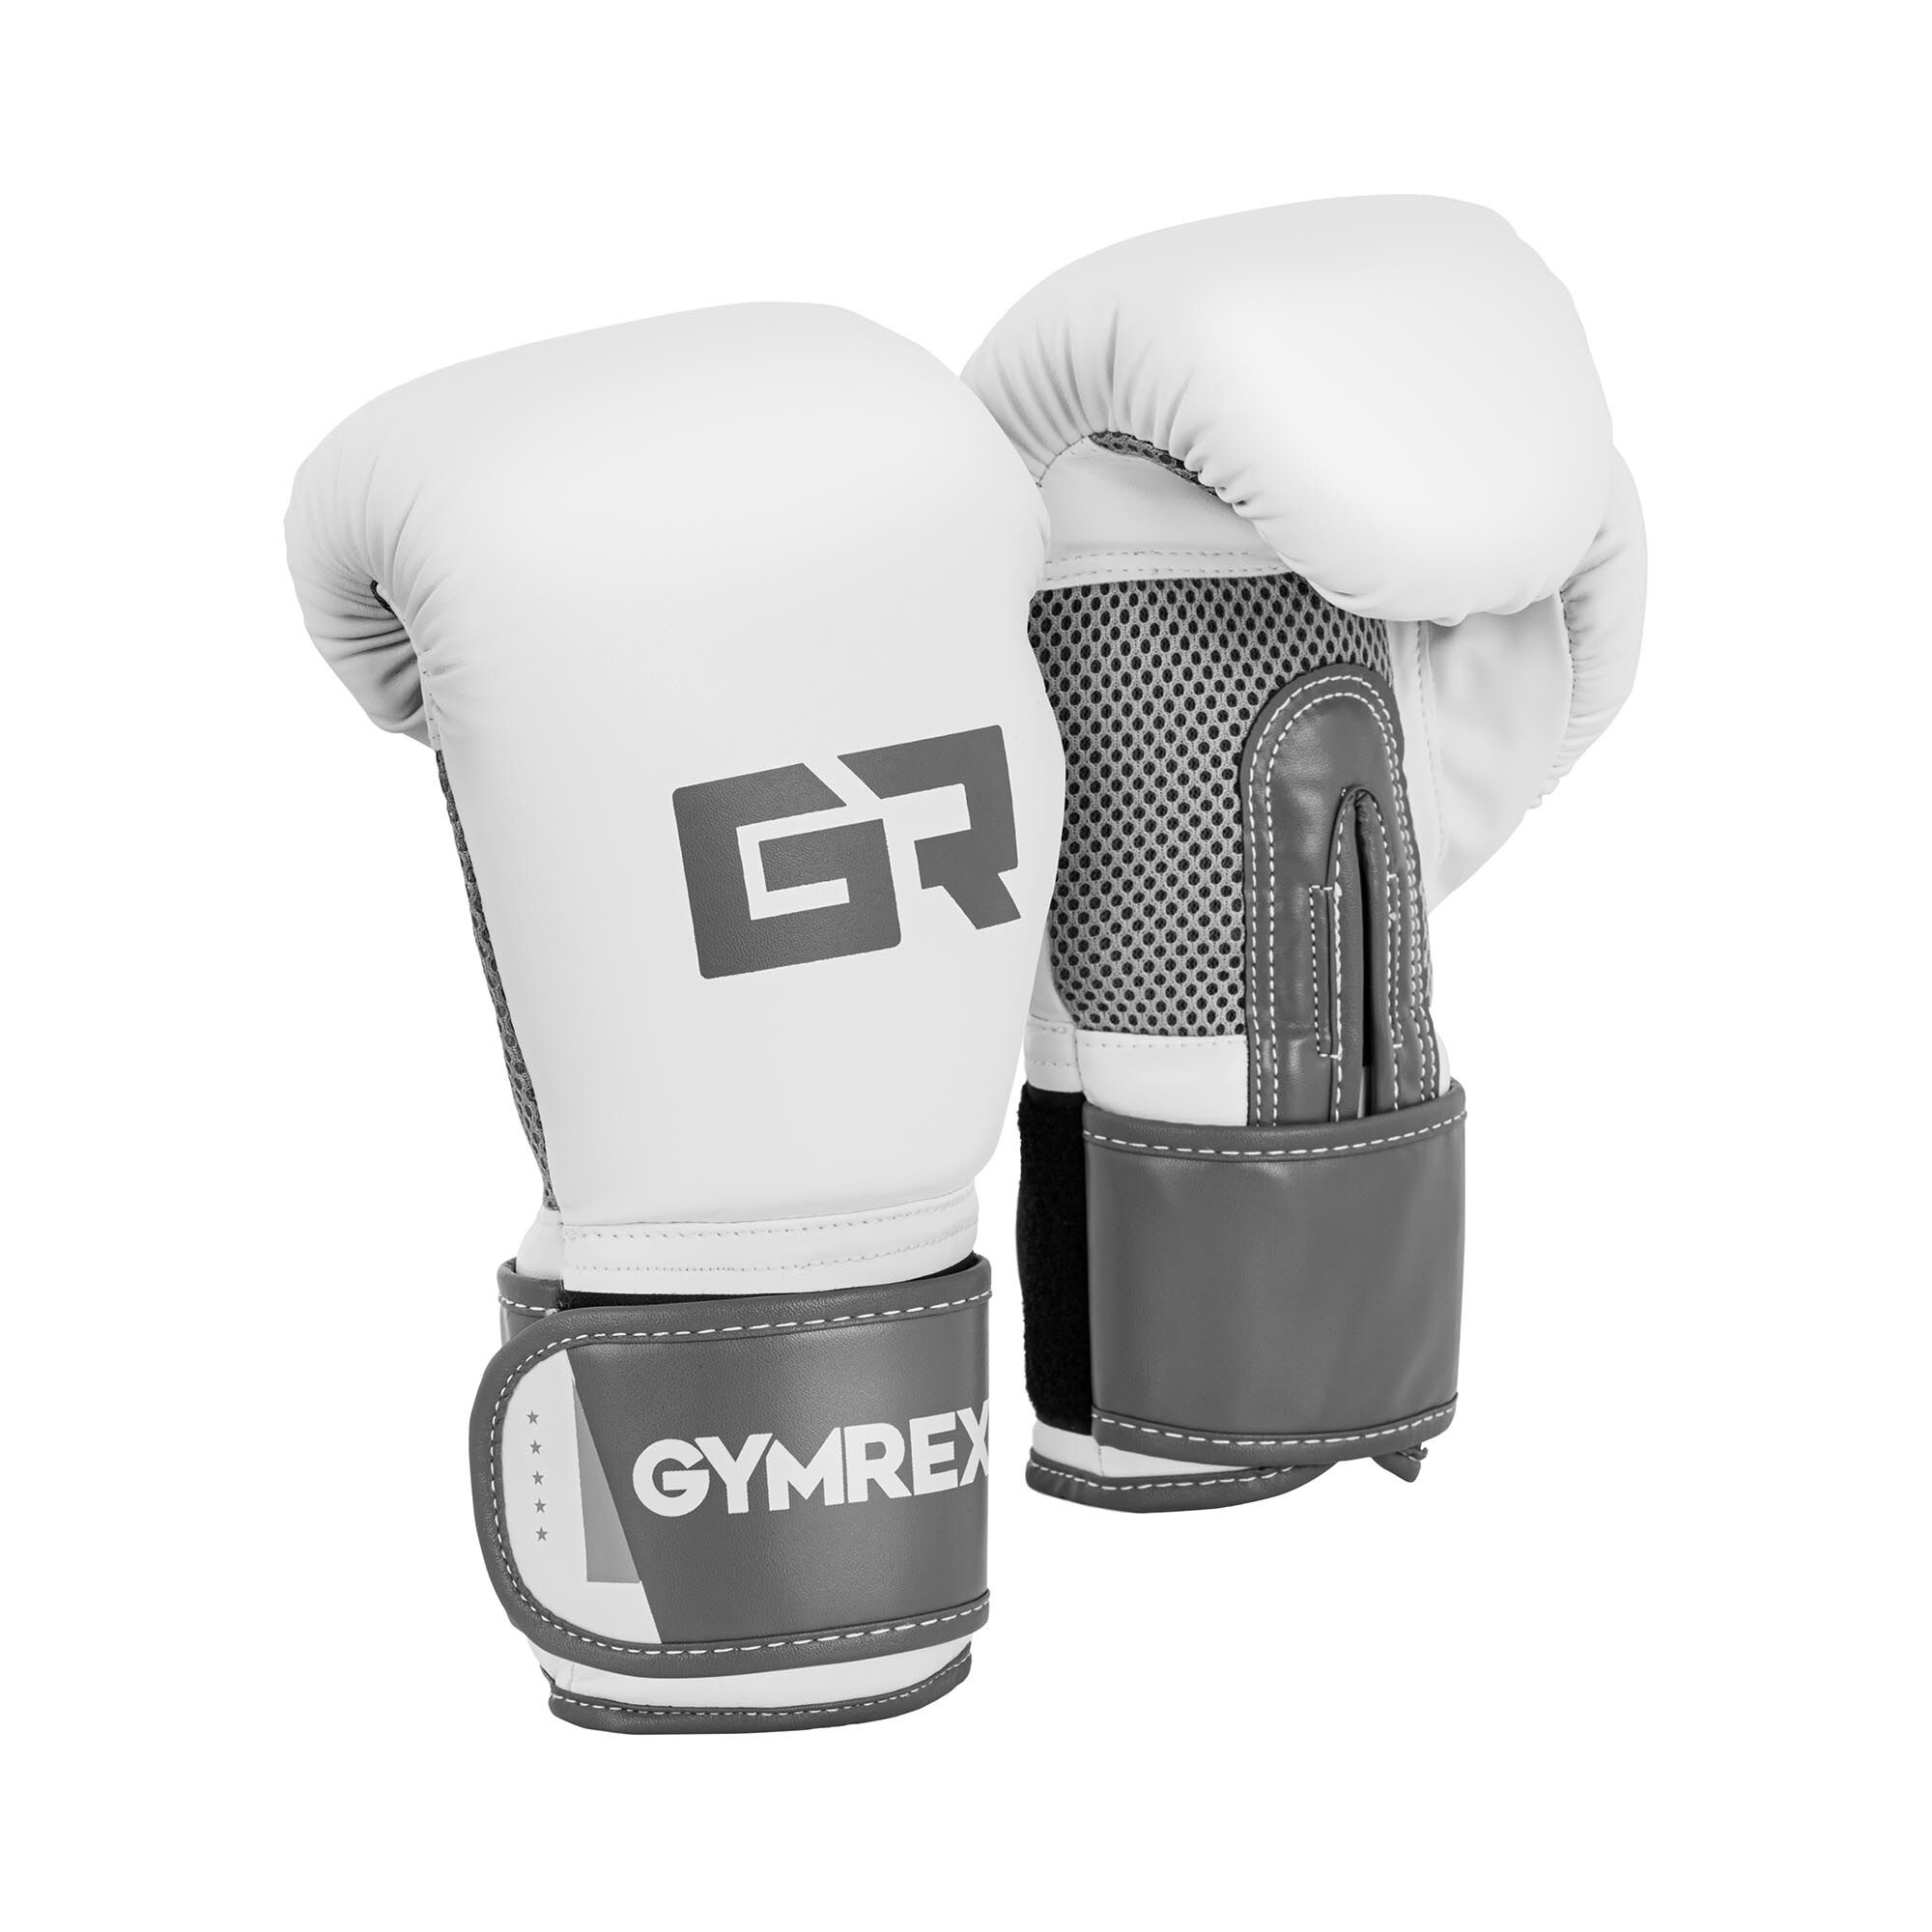 Gymrex Boxhandschuhe - 8 oz - Mesh innen - weiß und metallic-hellgrau